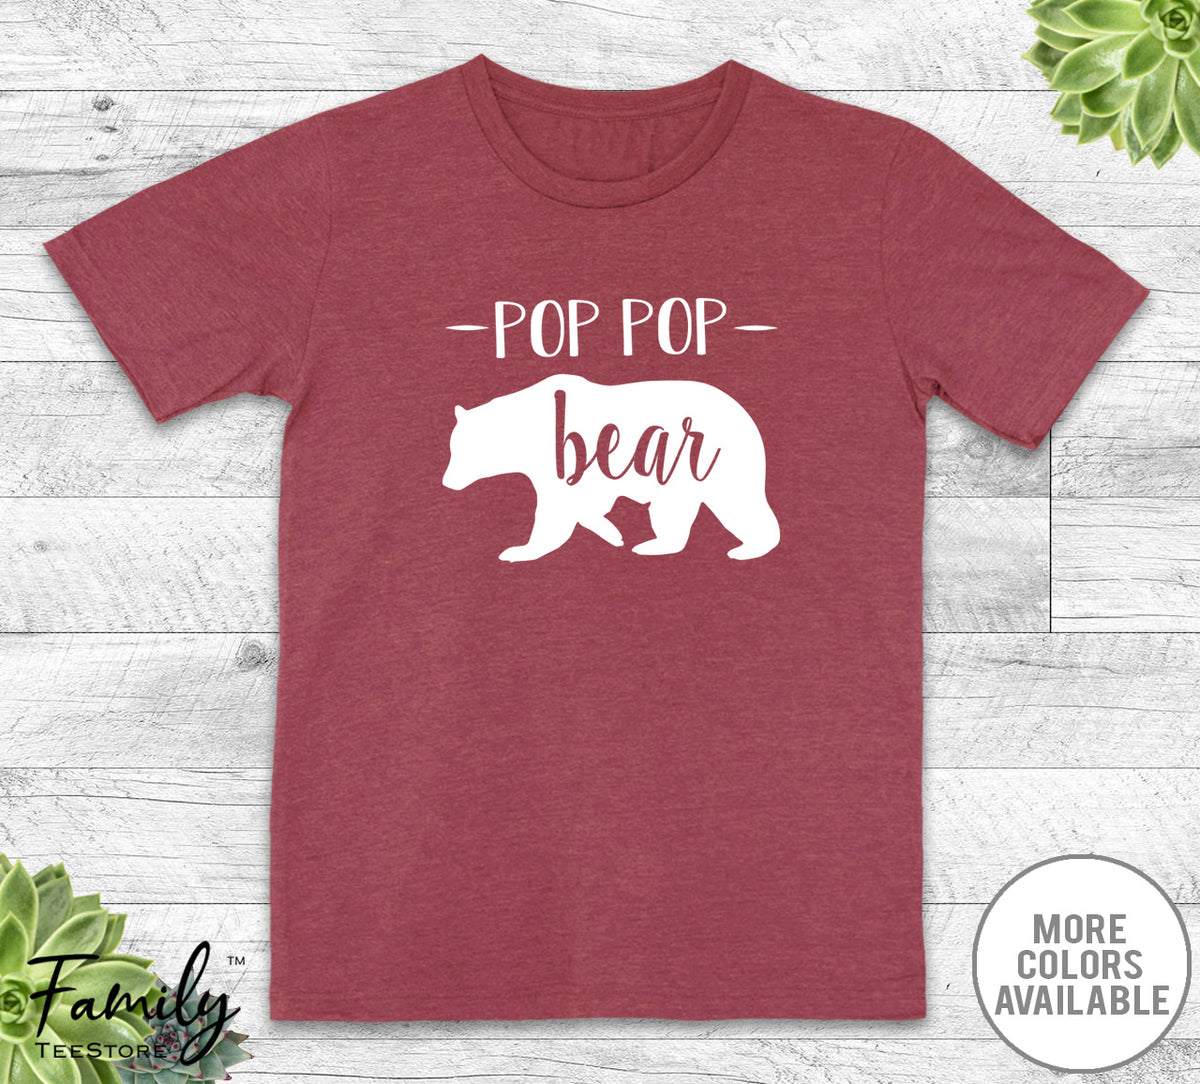 Pop Pop Bear - Unisex T-shirt - Pop Pop Shirt - Pop Pop Gift - familyteeprints